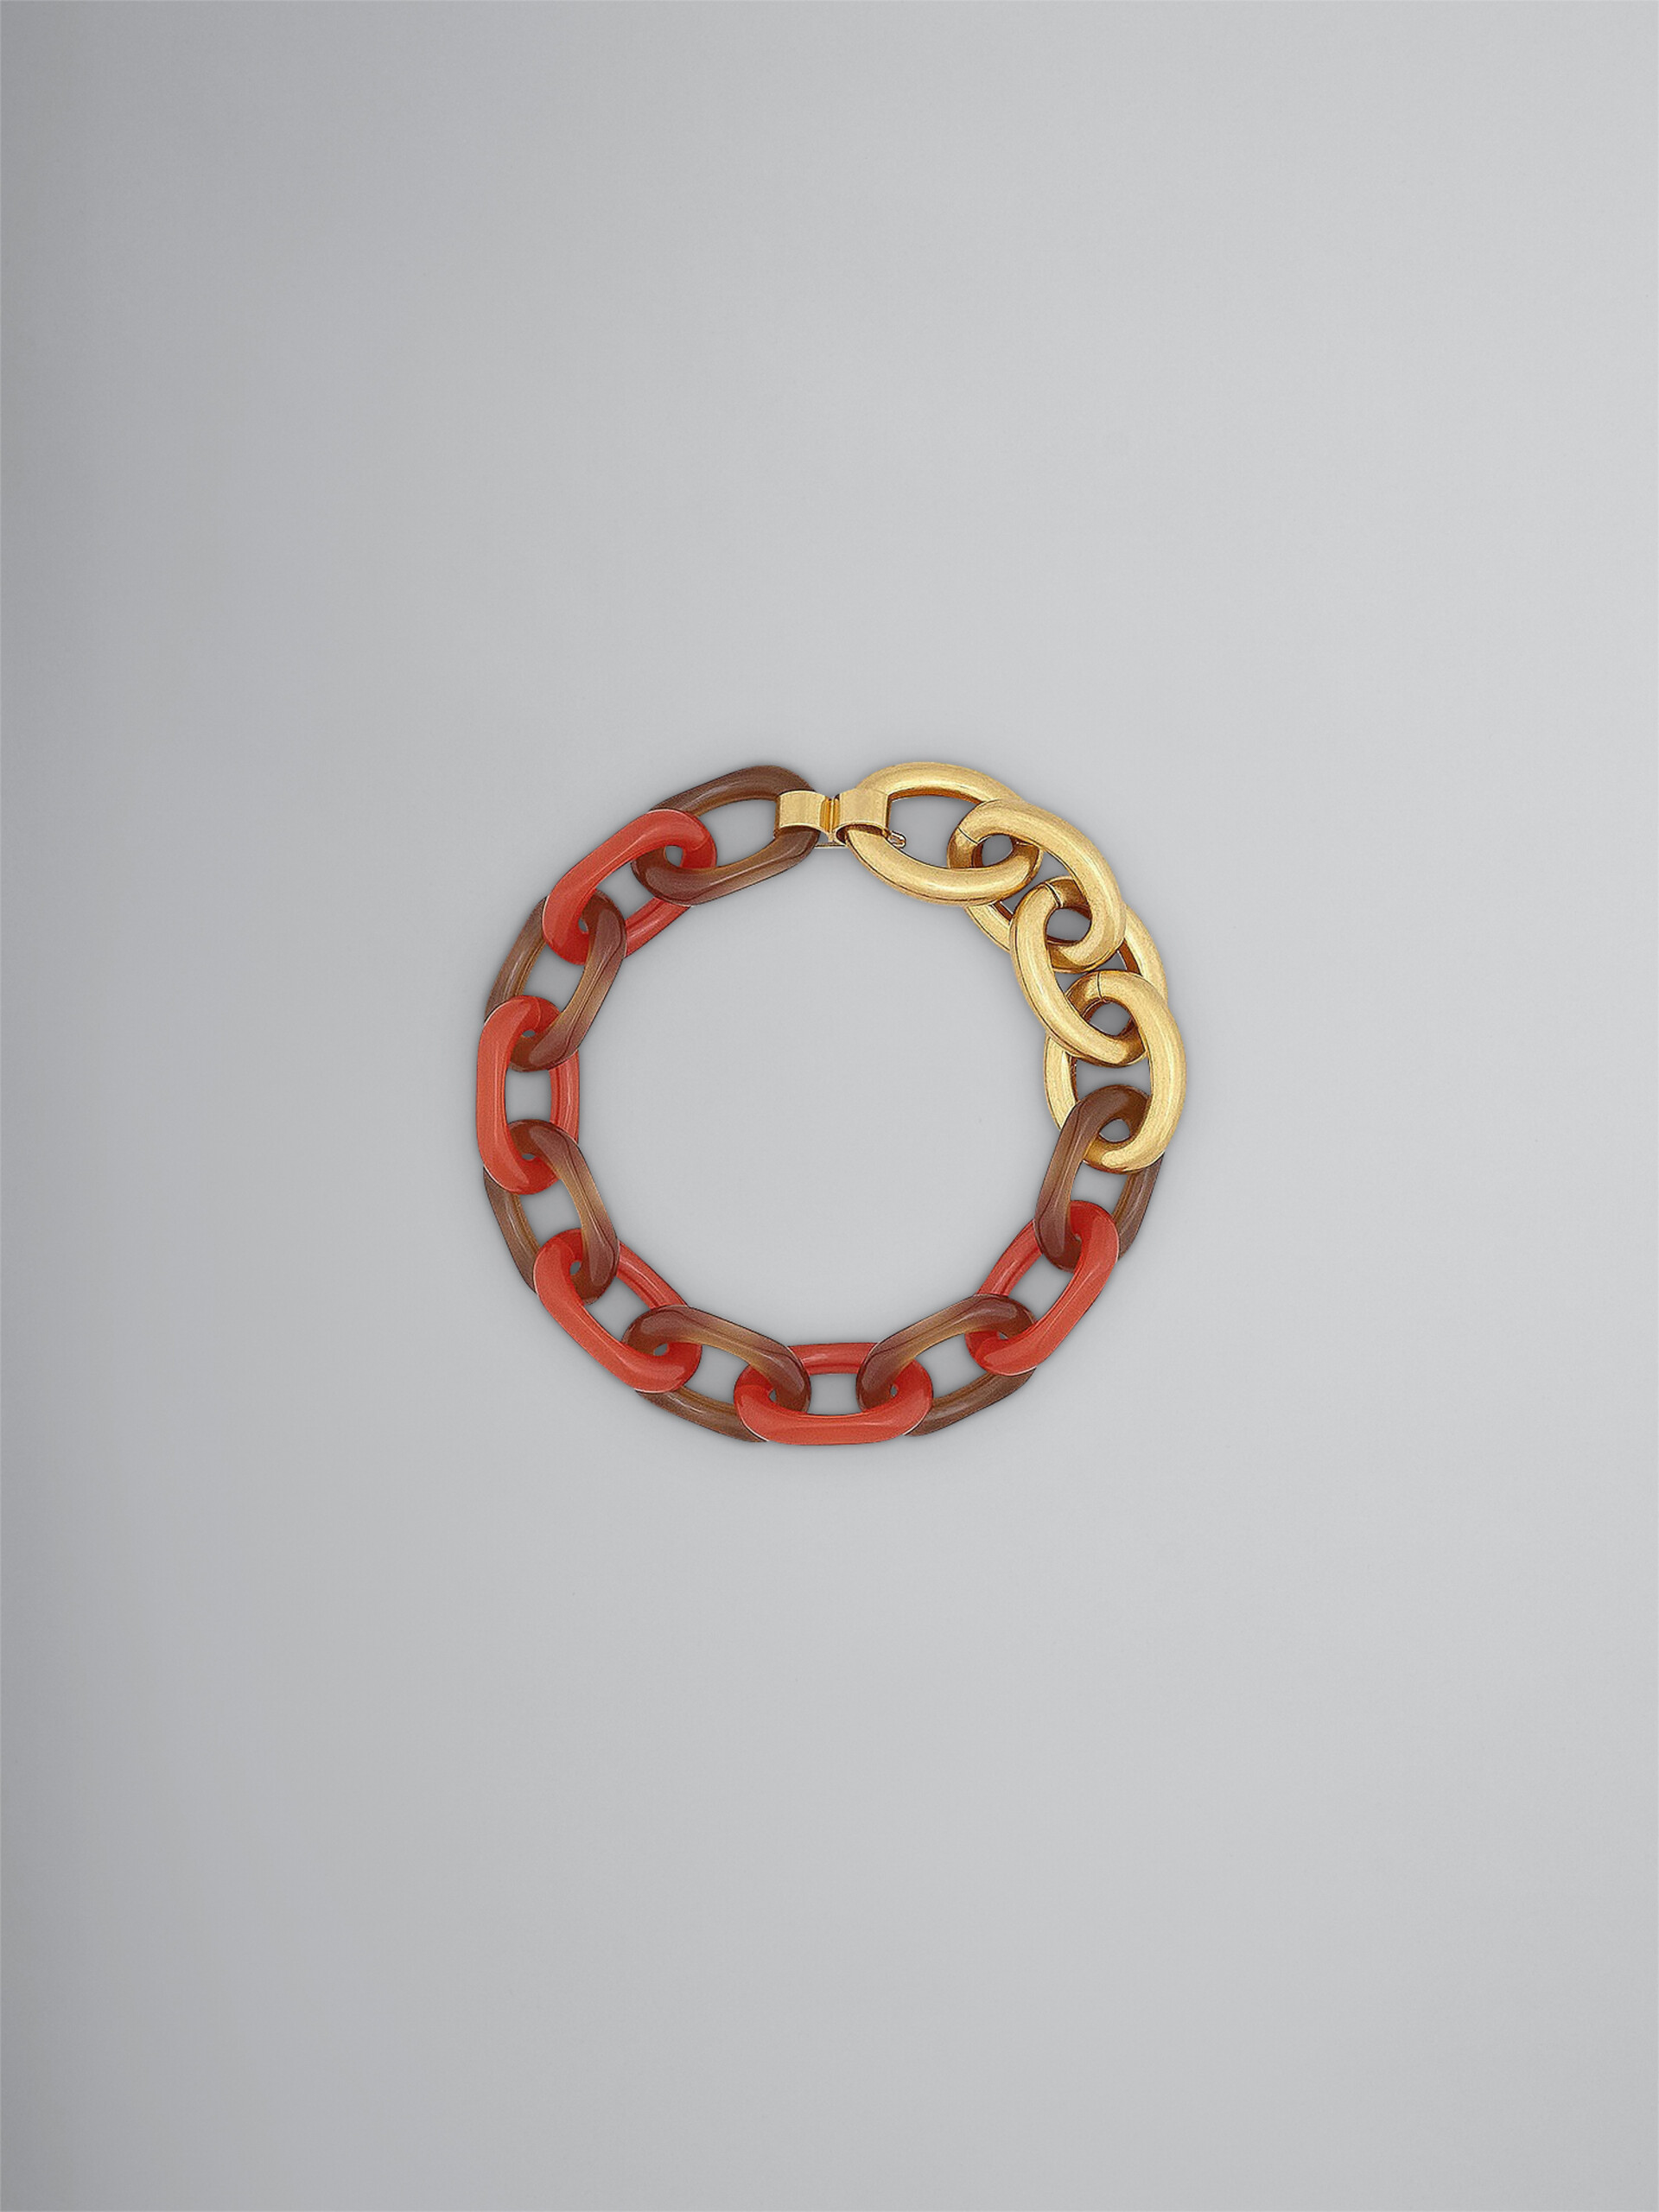 VERTIGO 레진 & 메탈 초커 - Necklaces - Image 1